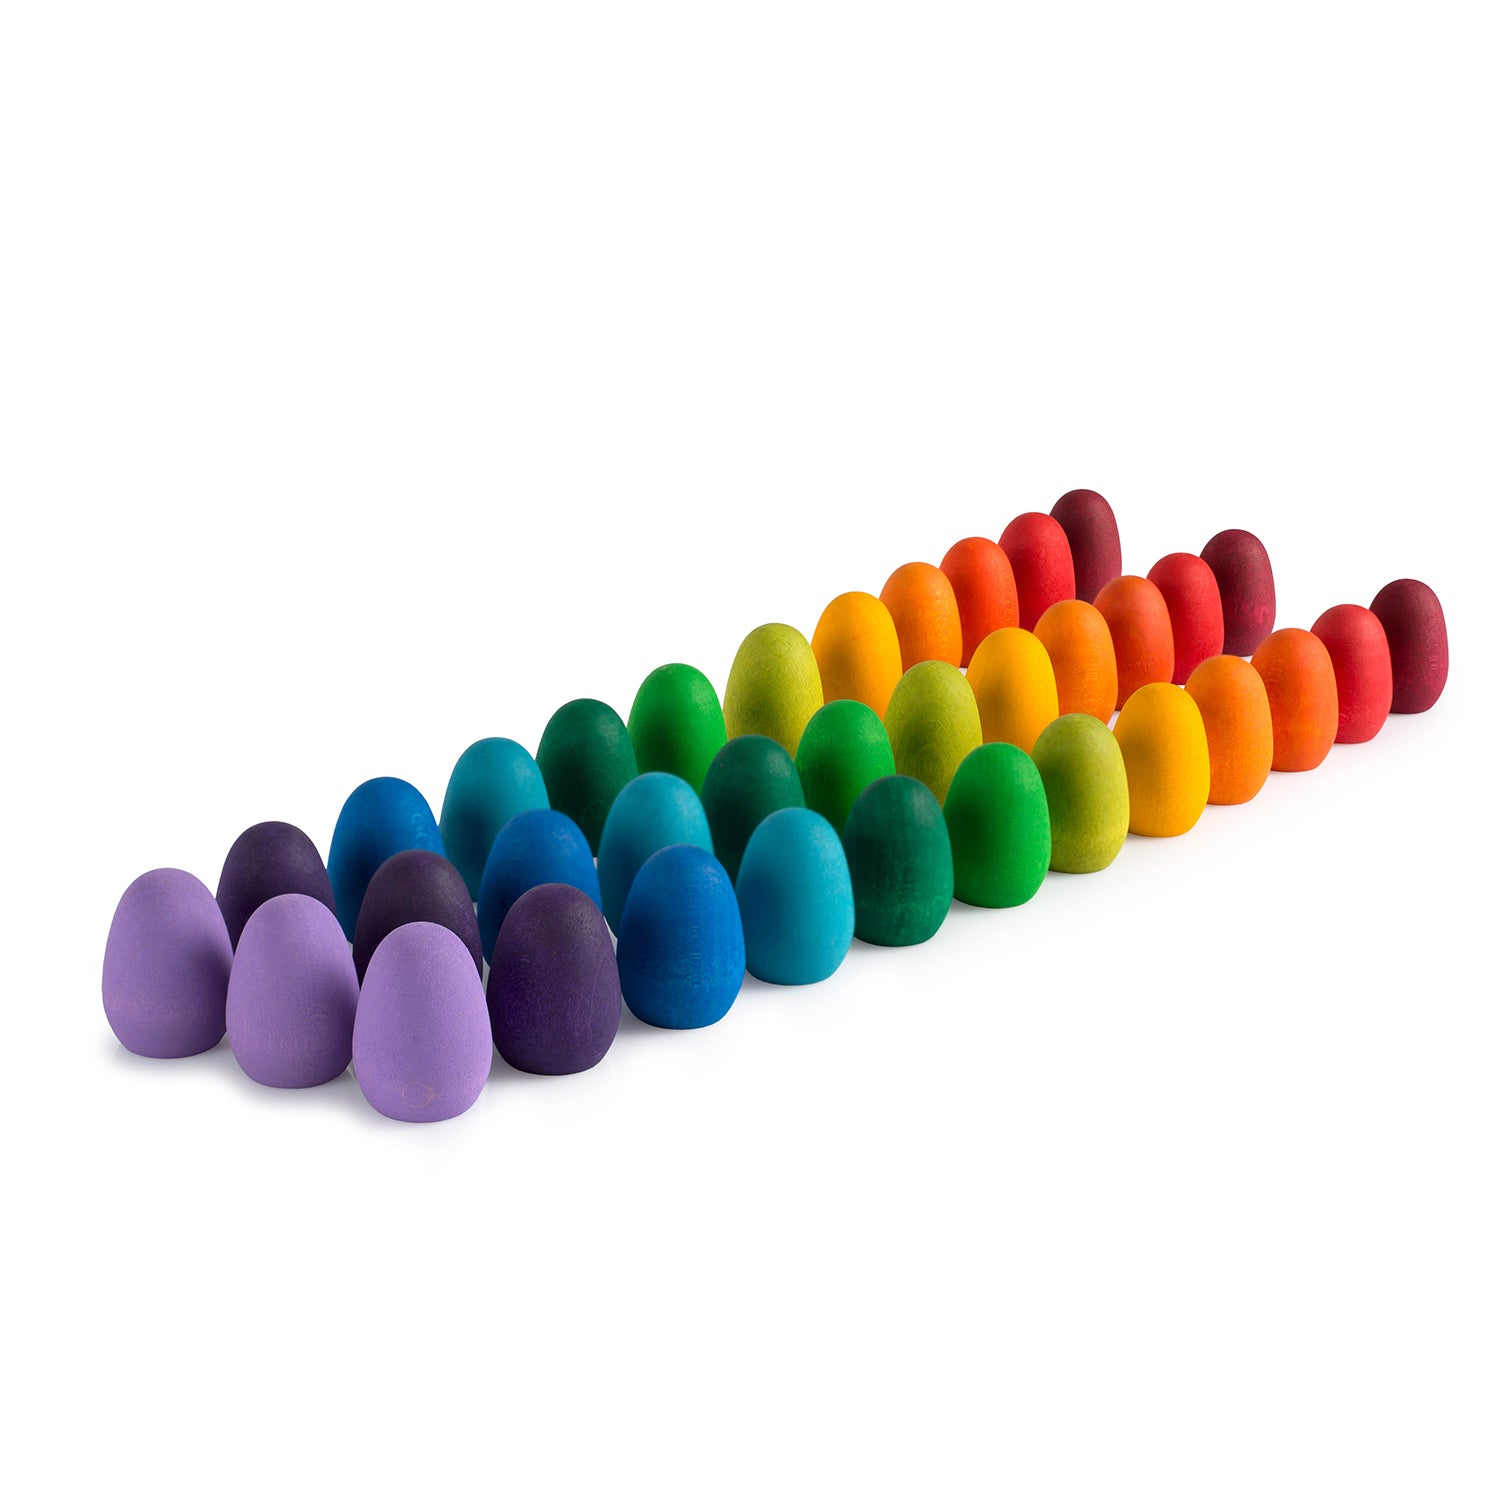 Mandala rainbow eggs